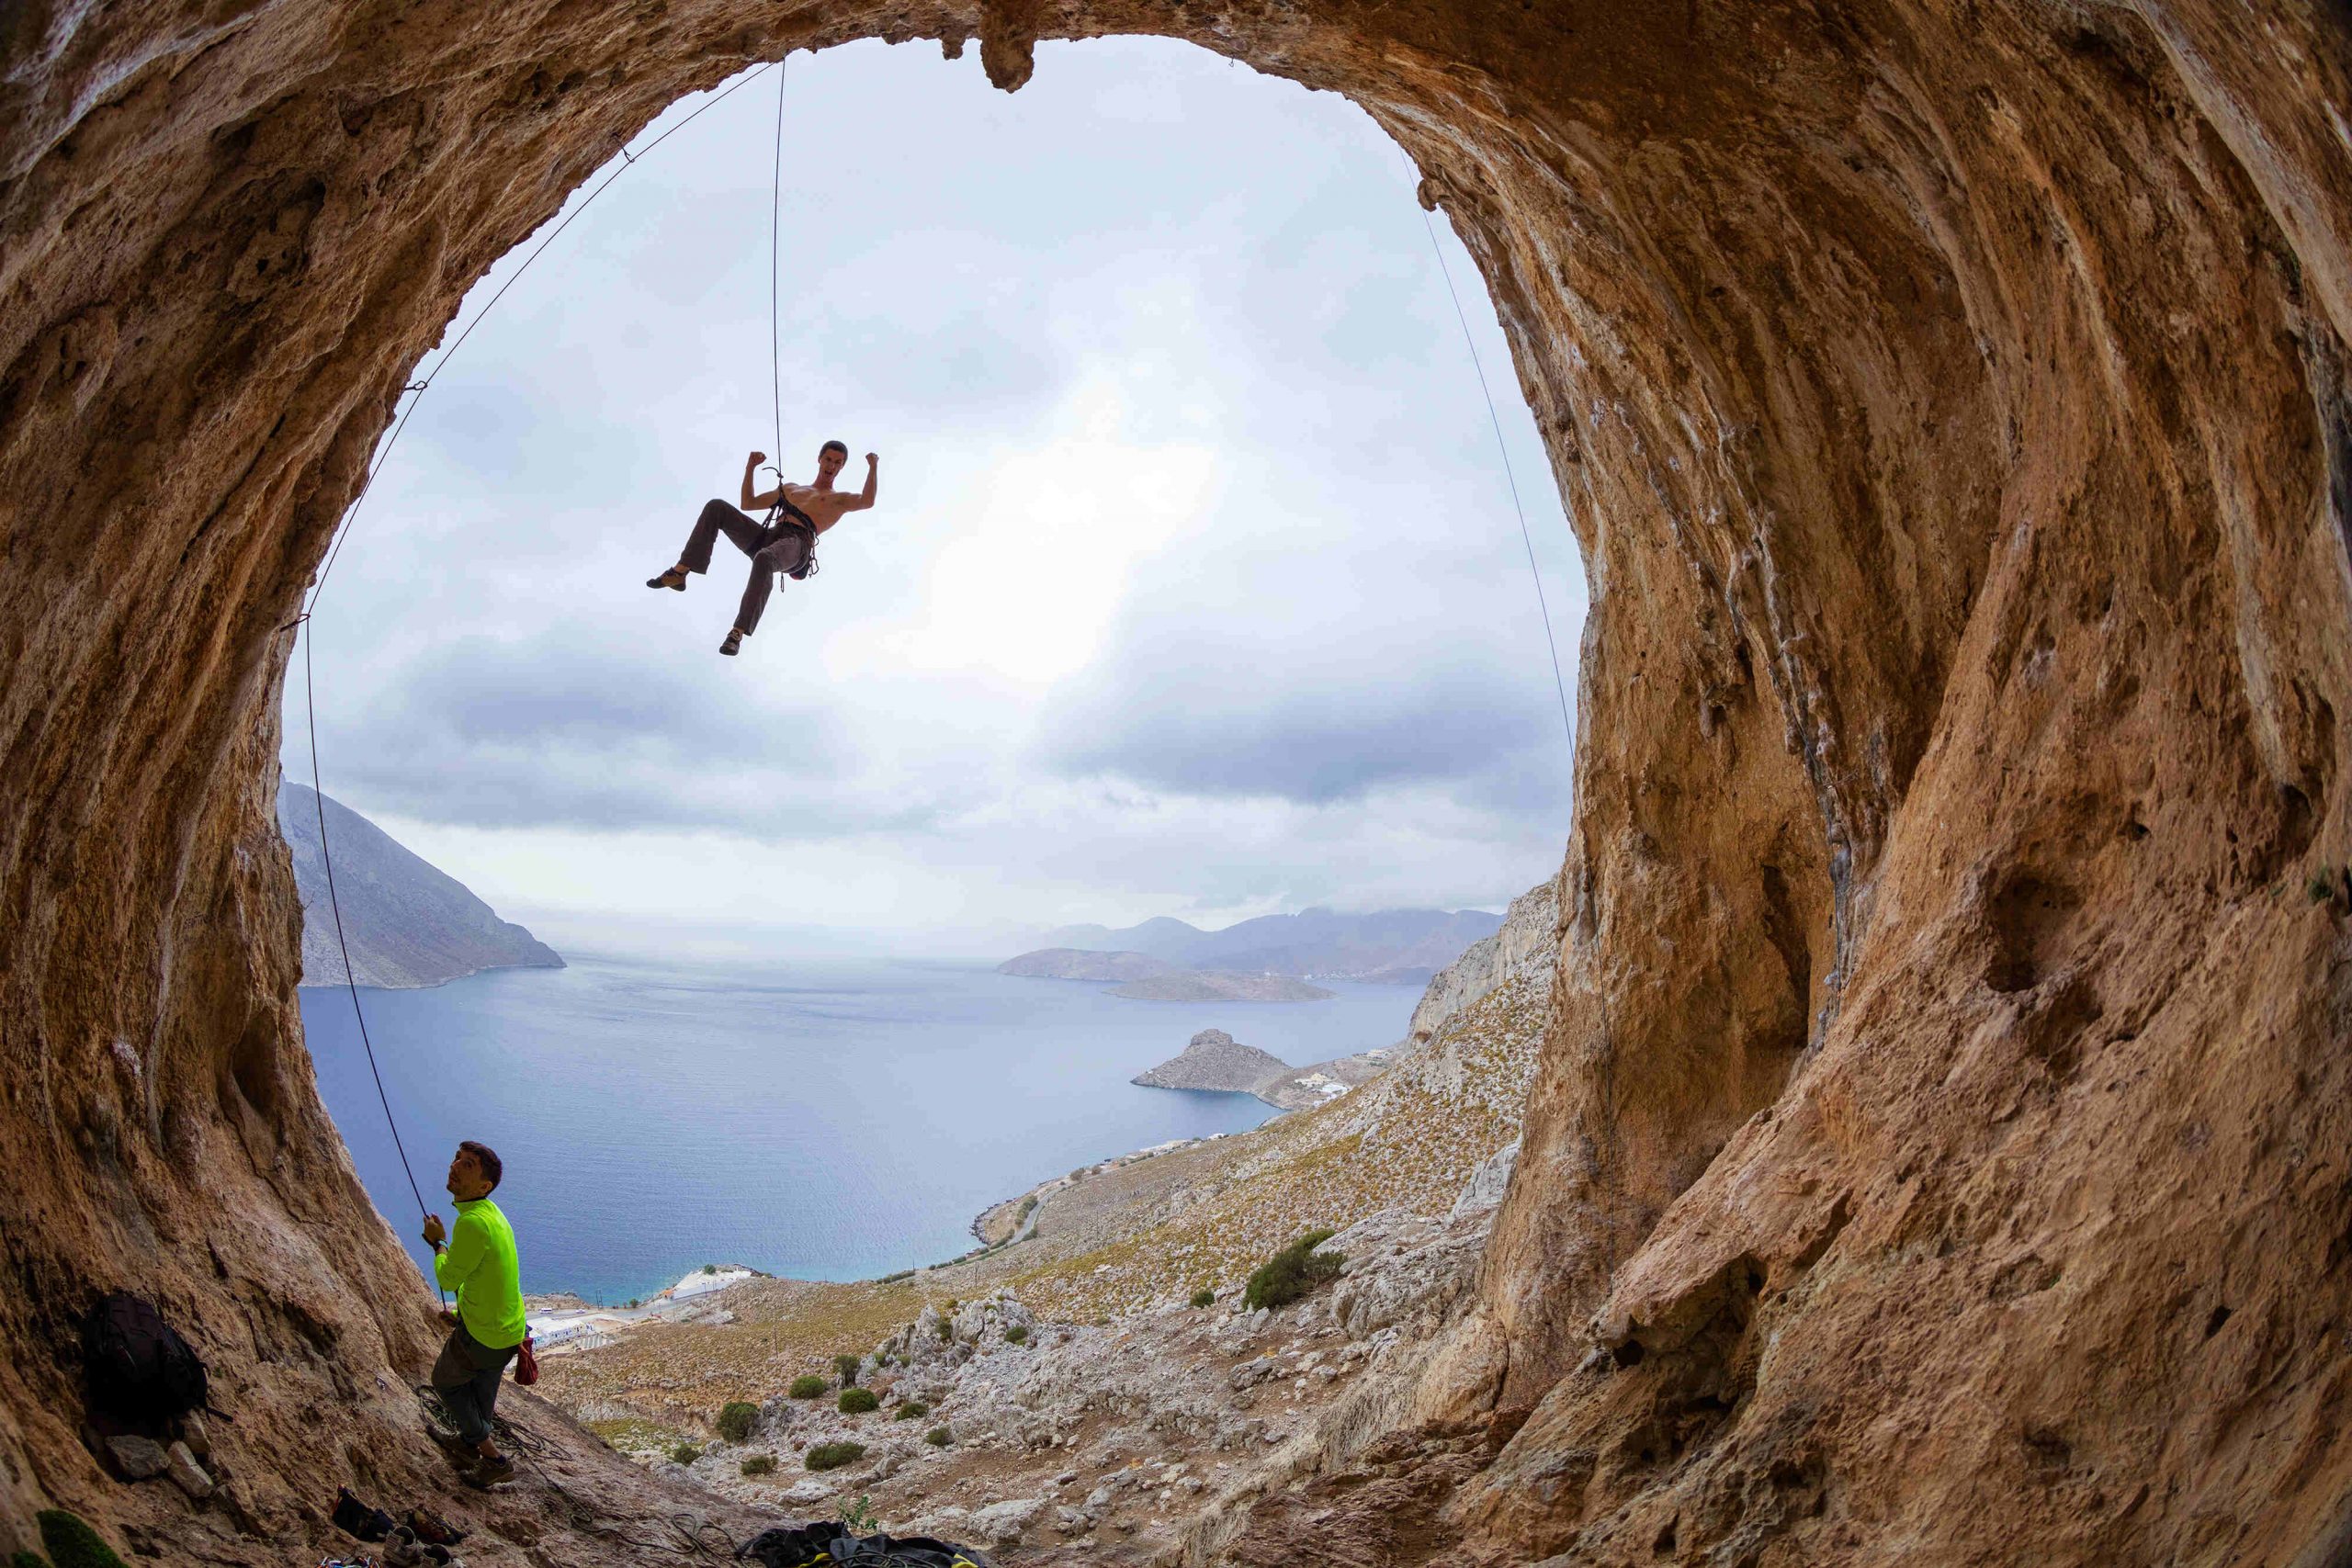 Greckie wyspy, jaskinia i skaly, wspinaczka, amatorzy wspinaczki wiszący na linach